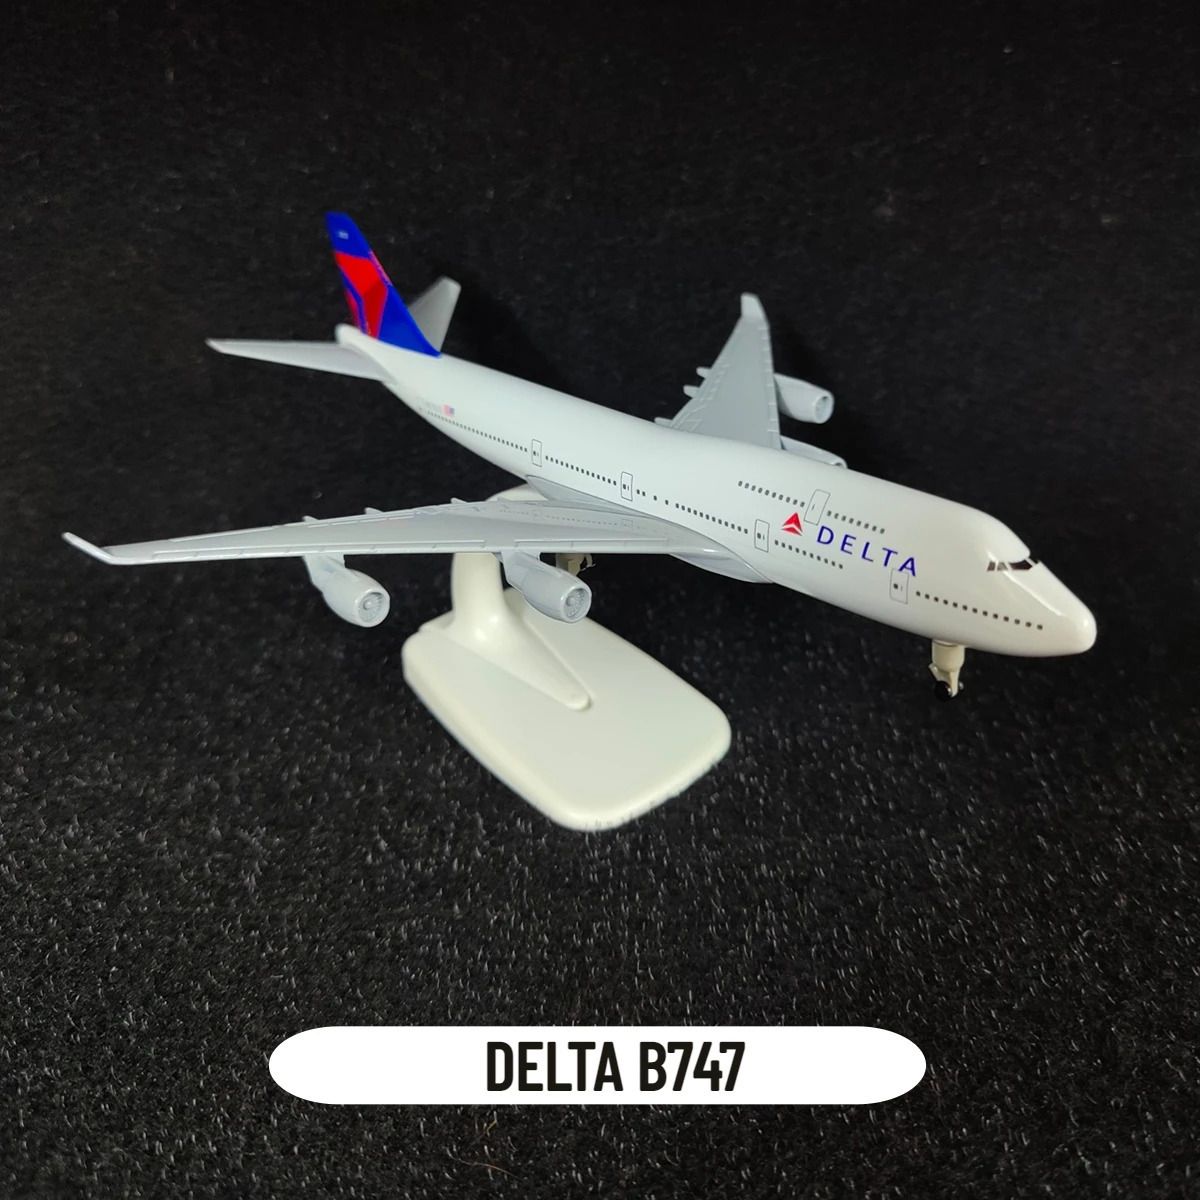 Delta B747.